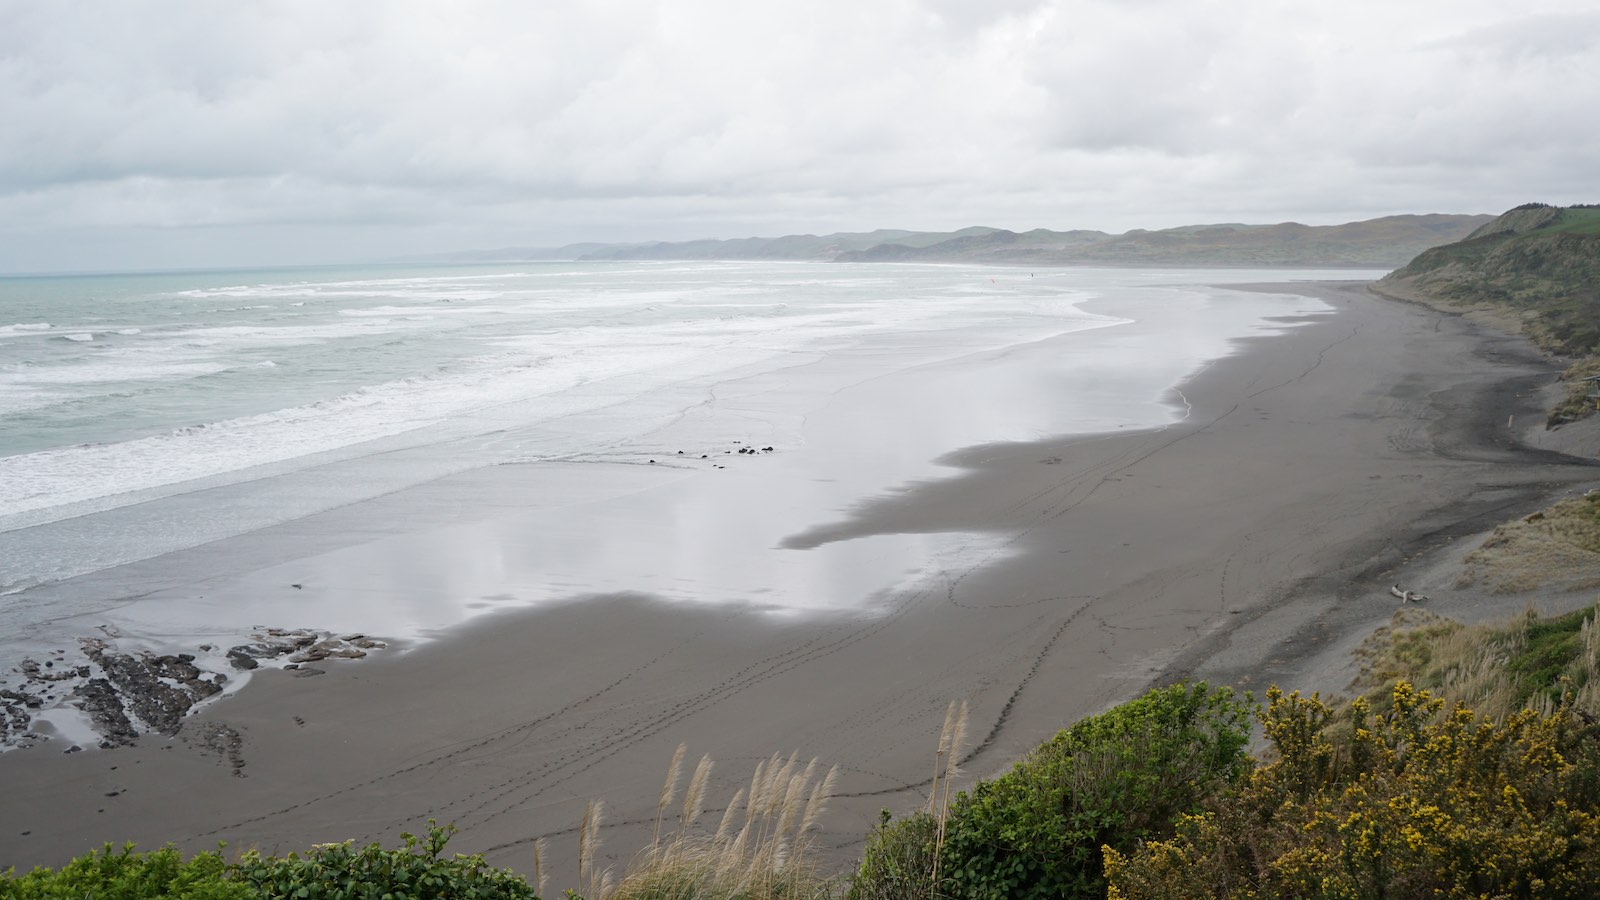 Ngarunui Beach, with it's black/dark gray sand.